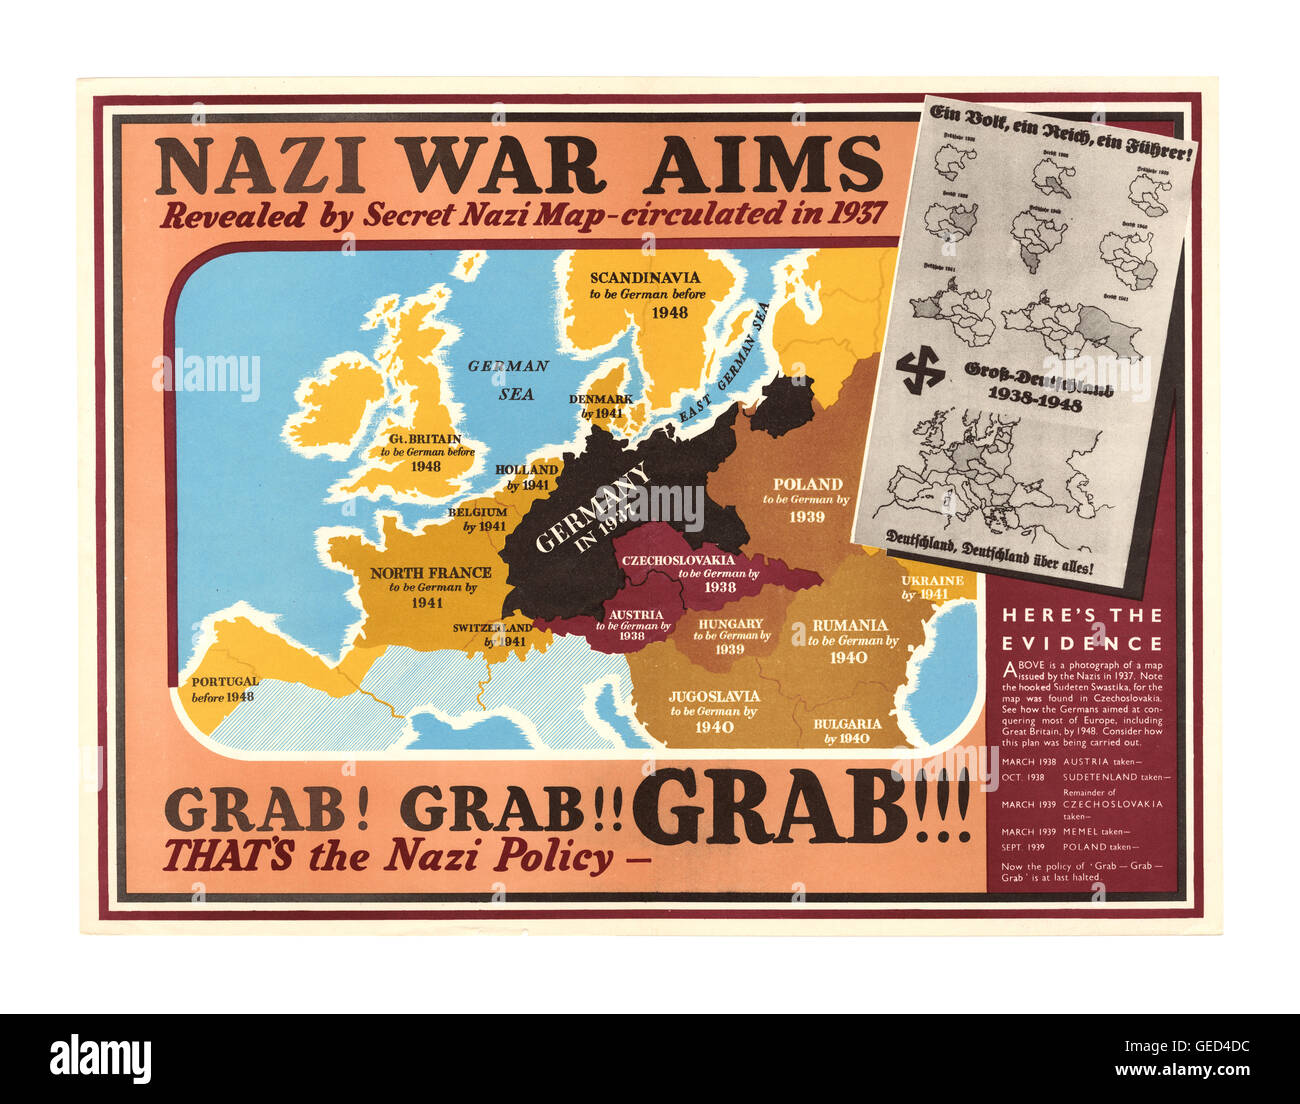 1939 WW2 UK Propaganda Poster' nationalsozialistischen Kriegsziele', vorgeschlagene Politik der Nsdap Land' Grab grab Grab'Plan von Land zu Land während ihres militärischen Aggression während des Zweiten Weltkrieges 2. Stockfoto